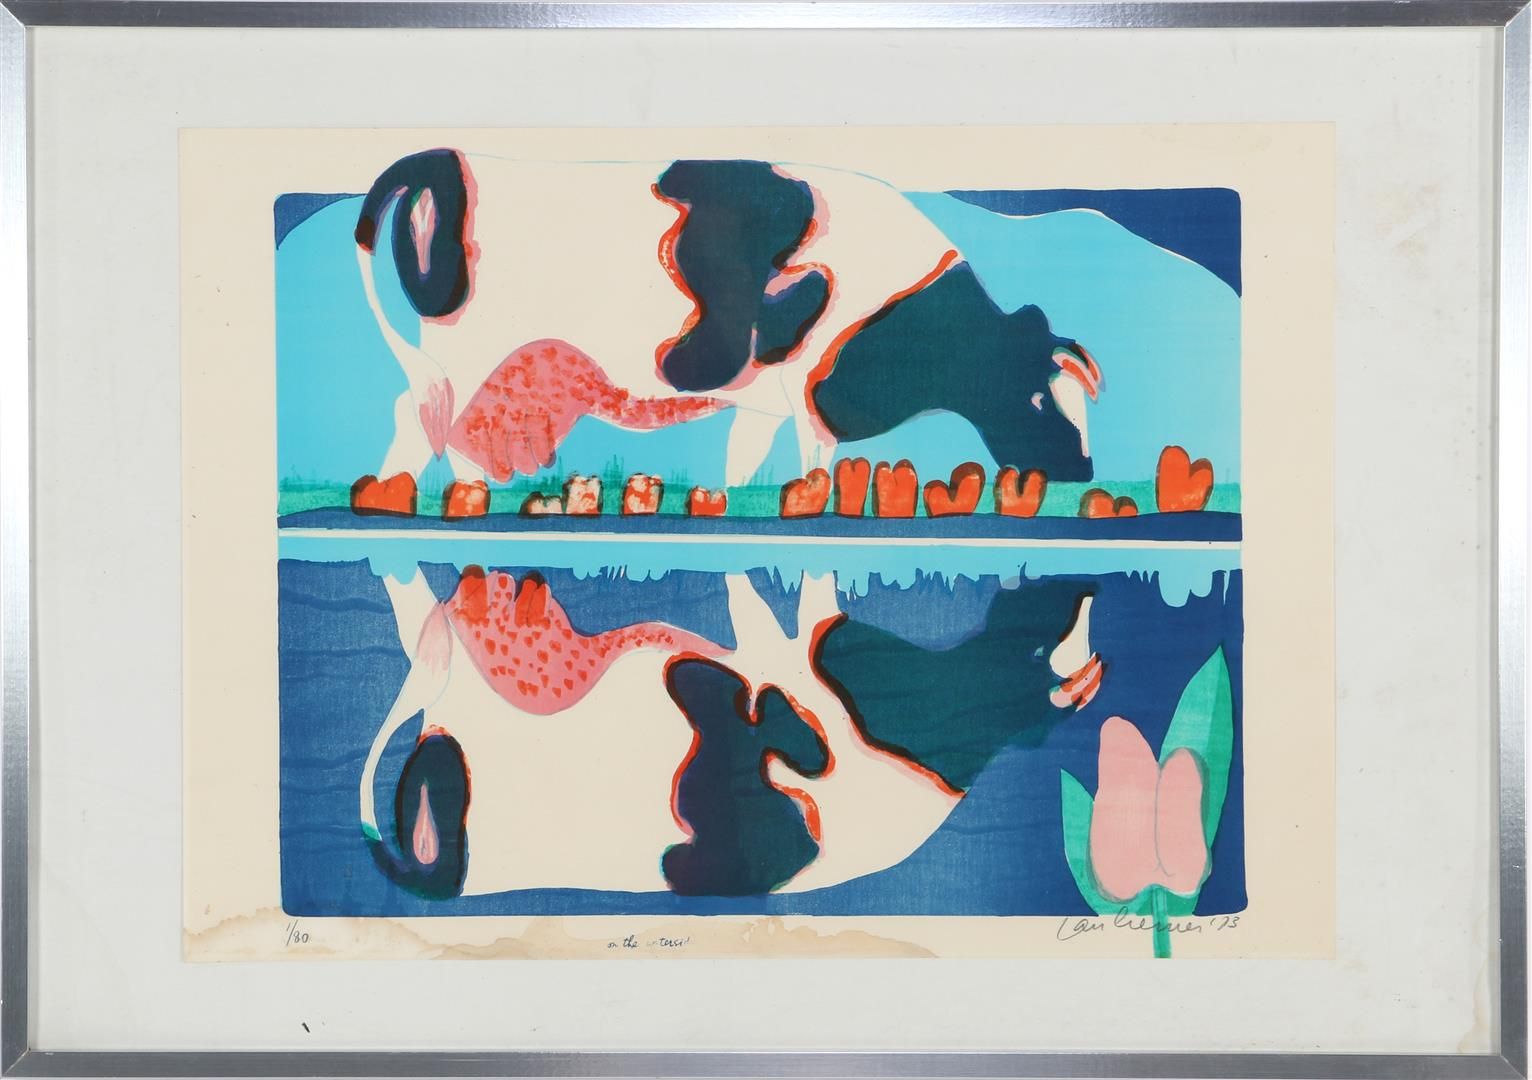 Jan Cremer 扬-克雷默 (1940-)

在水源地，1973年的彩色石版画，1/80，52x66厘米